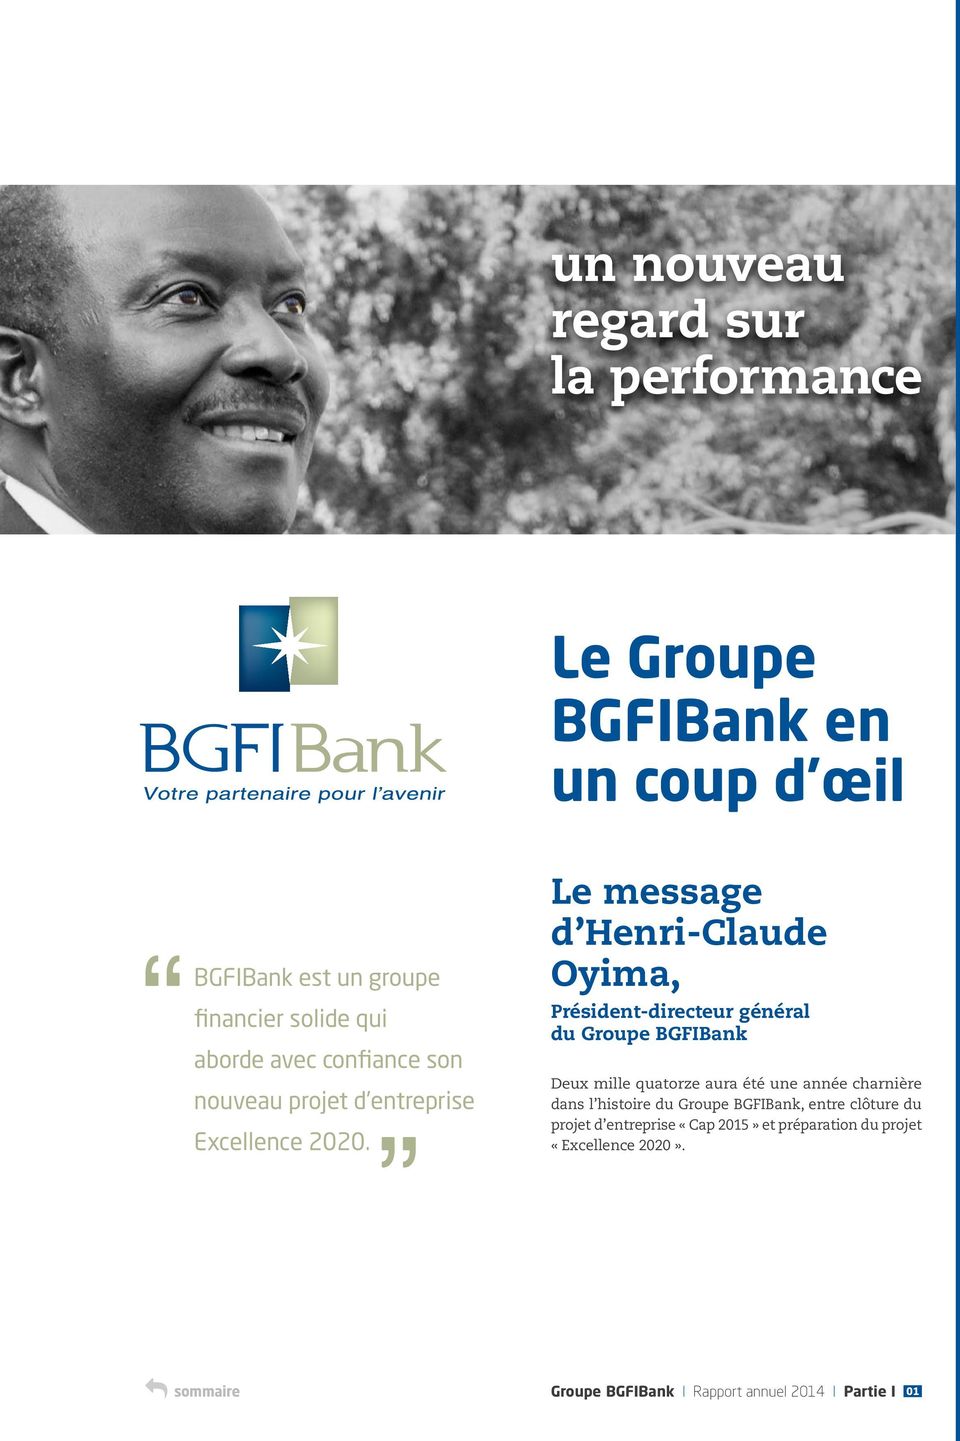 Le message d Henri-Claude Oyima, Président-directeur général du Groupe BGFIBank Deux mille quatorze aura été une année